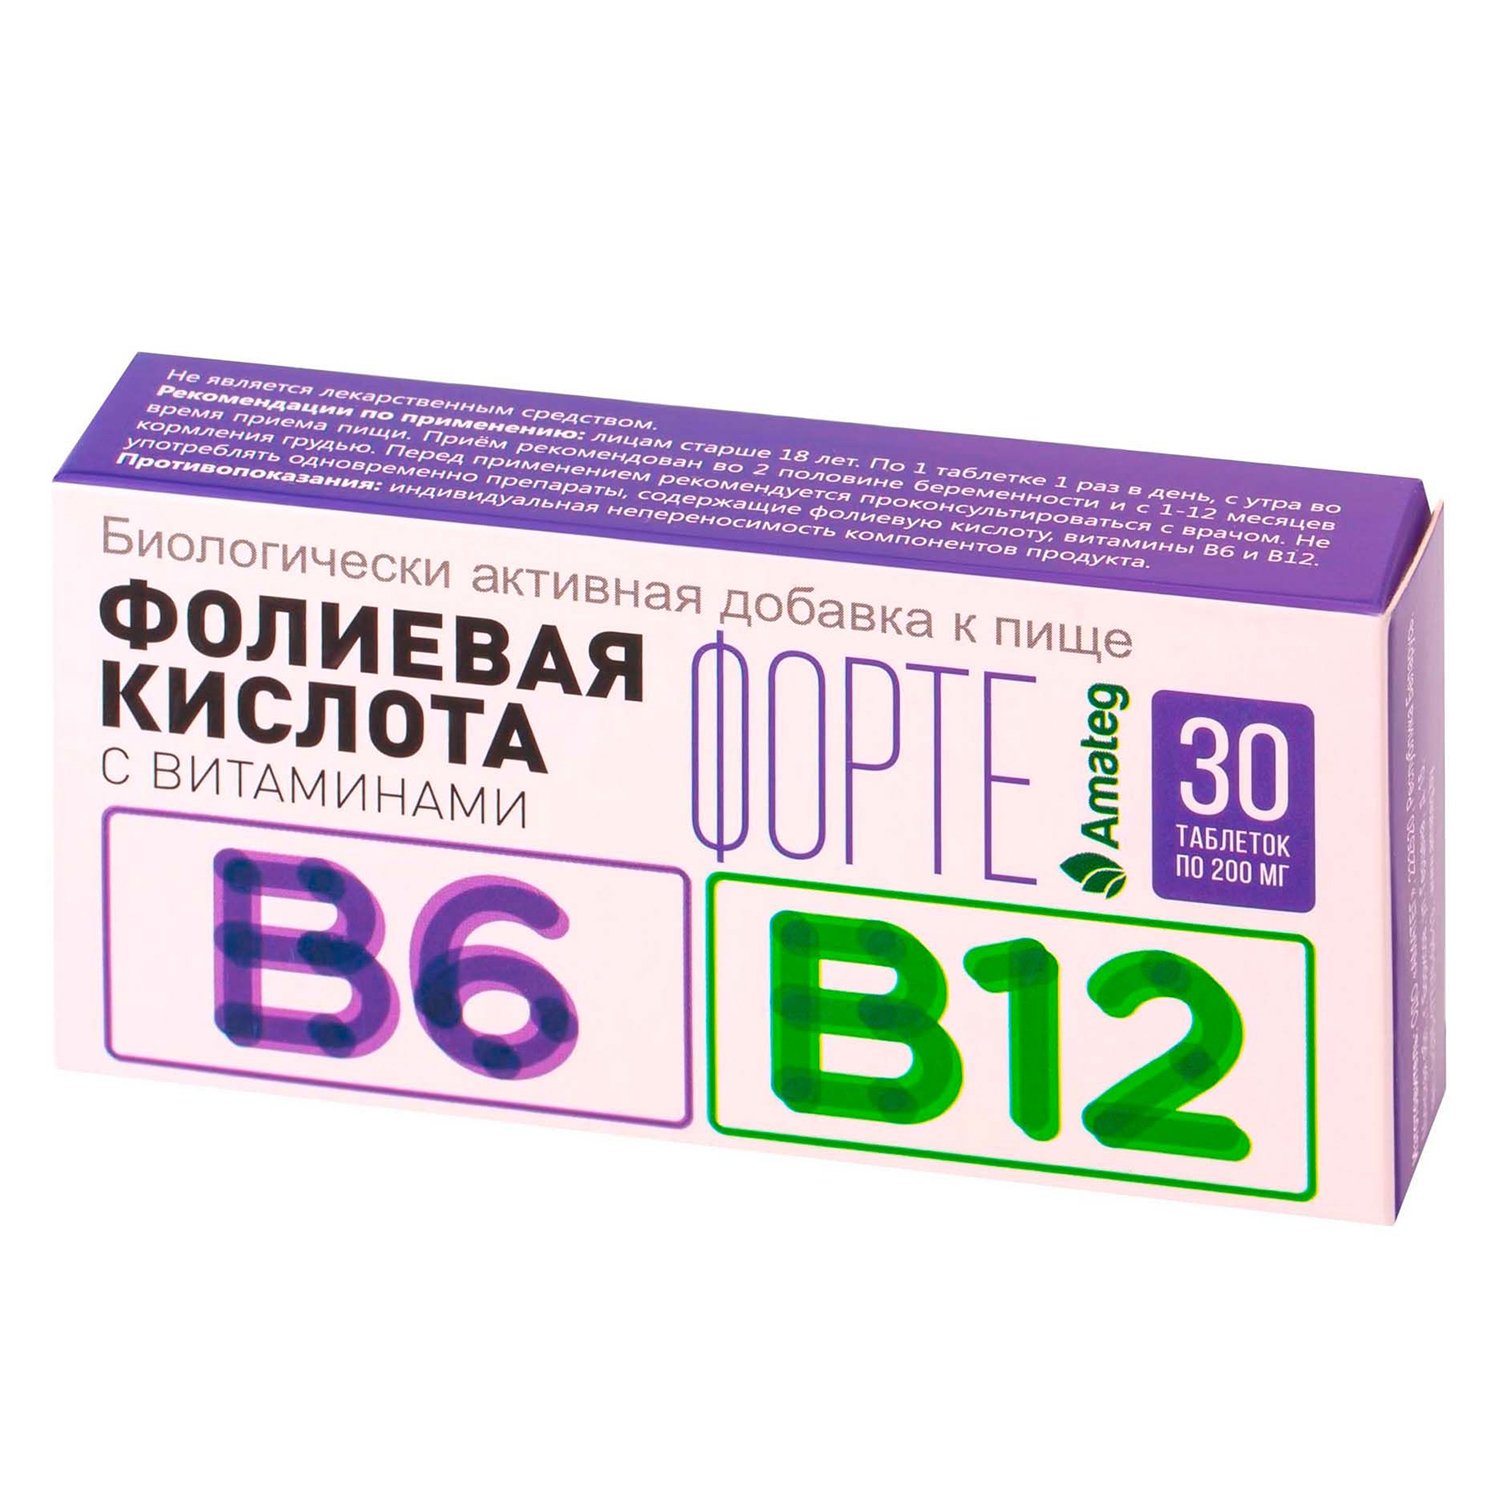 Фолиевая цианокобаламин. Фолиевая кислота с витаминами b12 и b6 таблетки. Фолиевая кислота с витаминами в12 и в6. Витамин б12 и фолиевая кислота в таблетках. Фолиевая кислота с витаминами в12 и в6 таблетки.